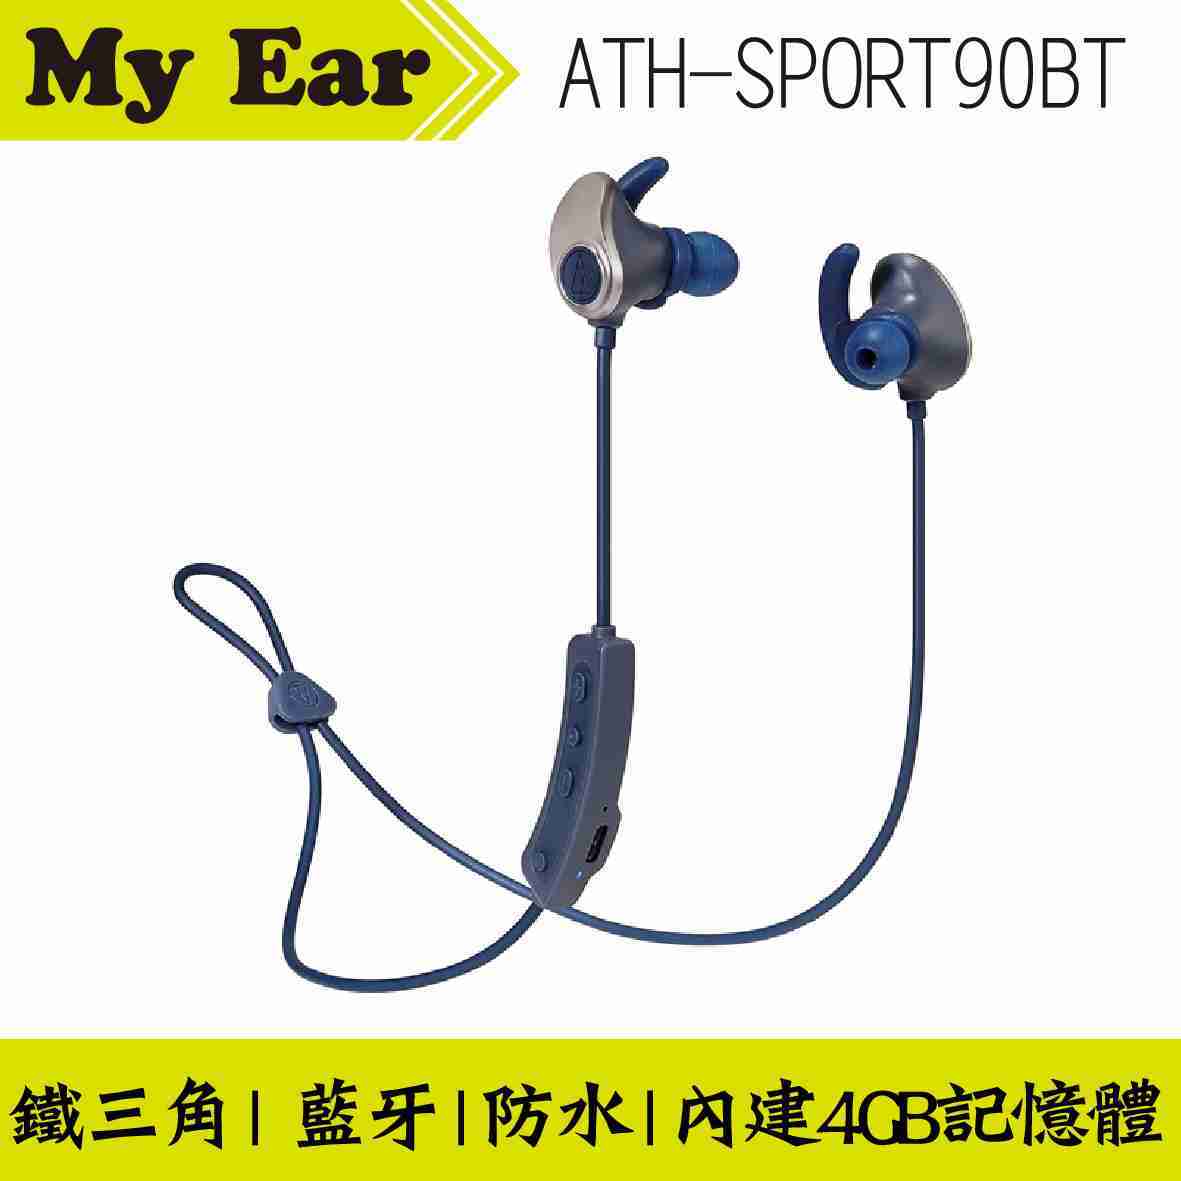 鐵三角 ATH-SPORT90BT 藍色 無線藍牙 耳道式耳機 | My Ear耳機專門店